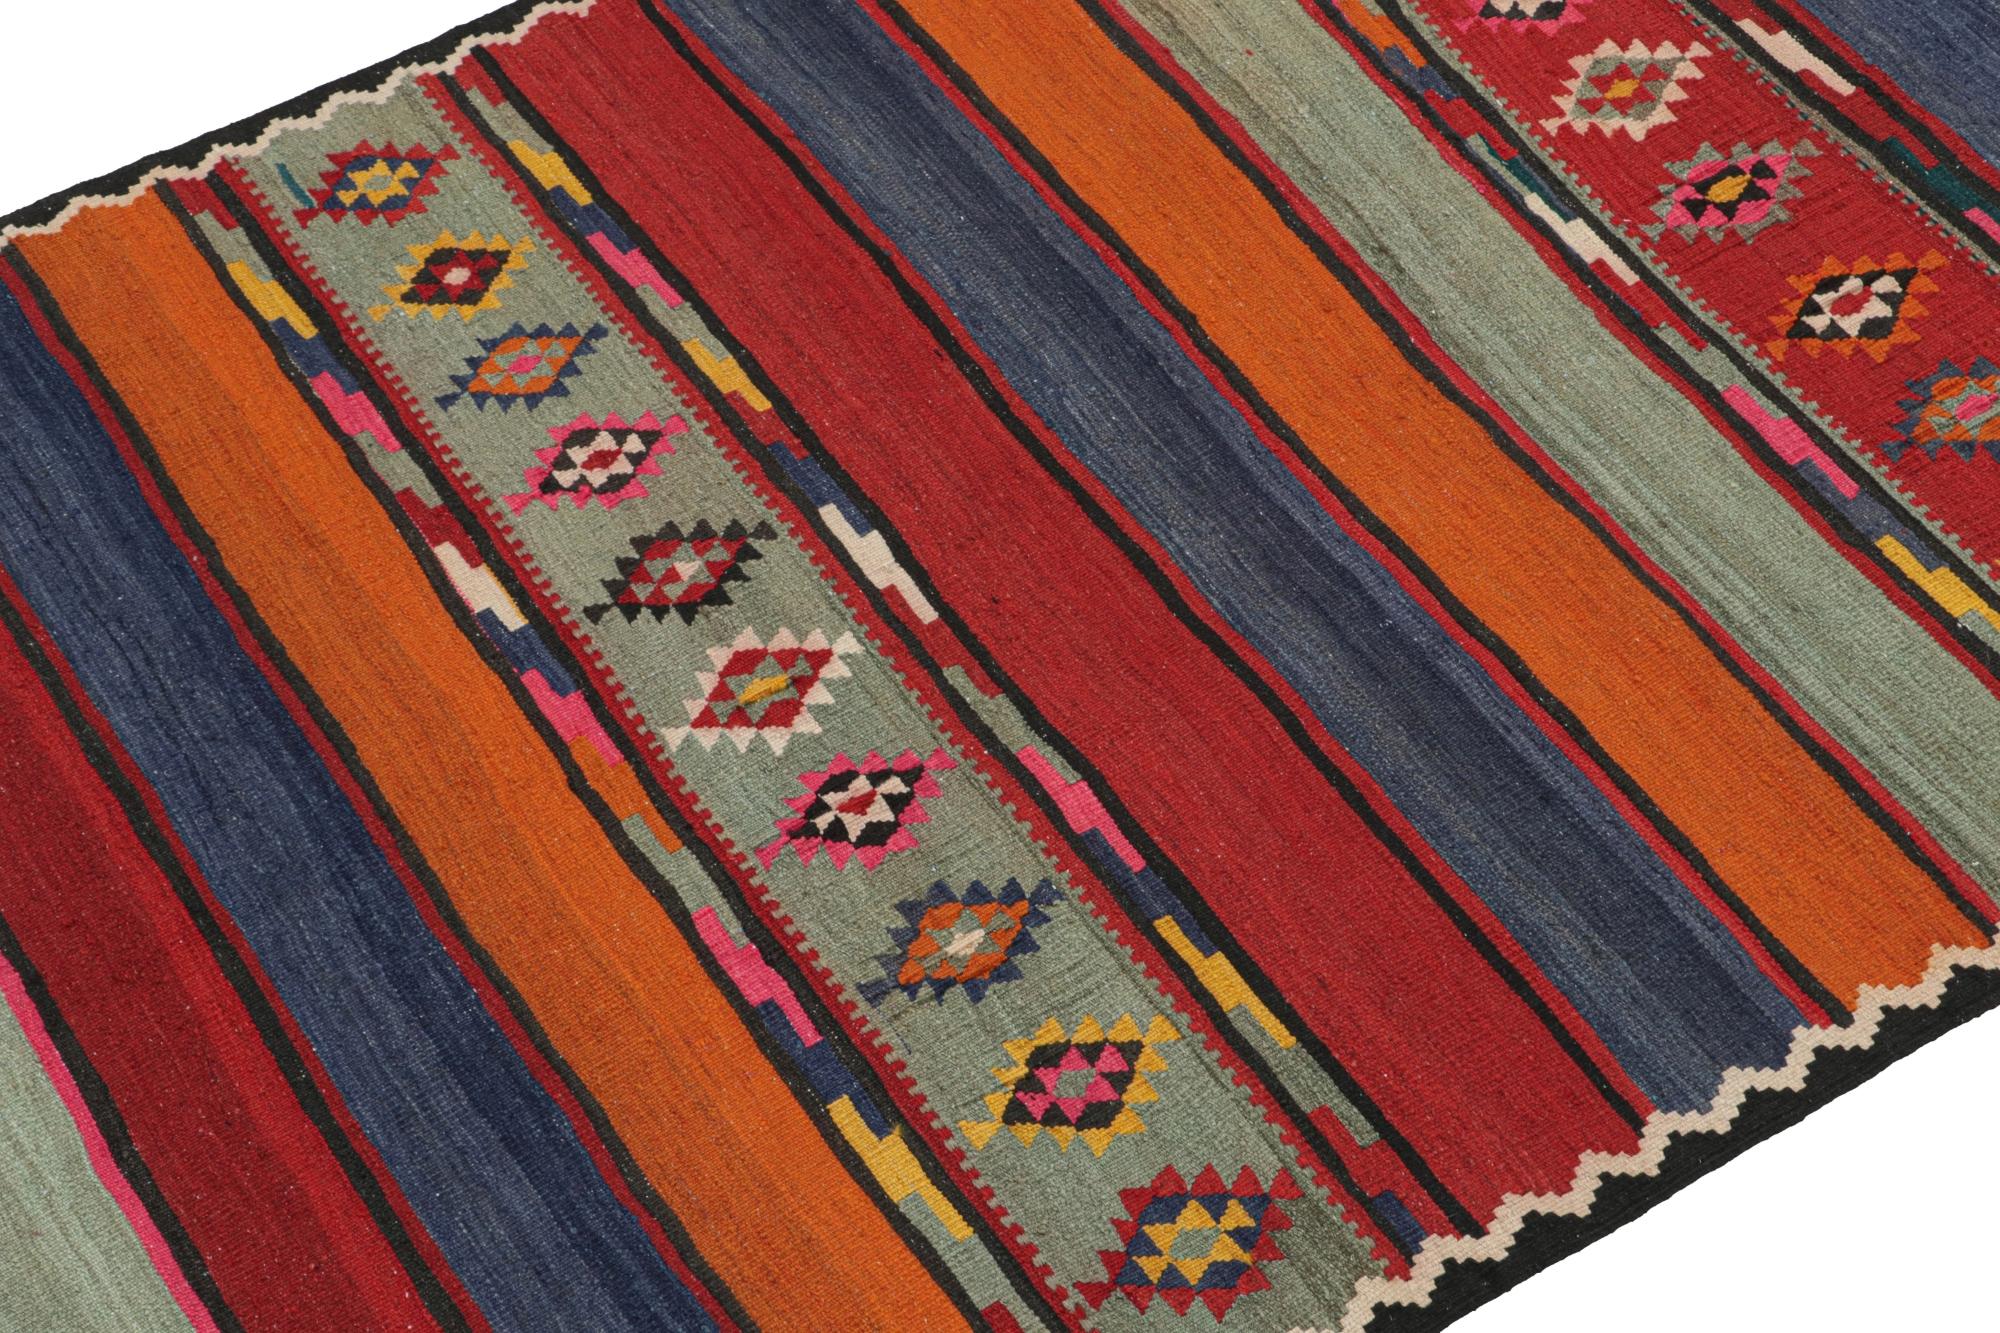 Dieser alte persische Kelim 5x11 ist ein Stammesteppich aus Meshkin - einem kleinen Dorf im Nordwesten, das für seine fabelhaften Werke bekannt ist. Er ist aus Wolle handgewebt und stammt aus der Zeit um 1950-1960. 

Weiter zum Design:

Sein Design